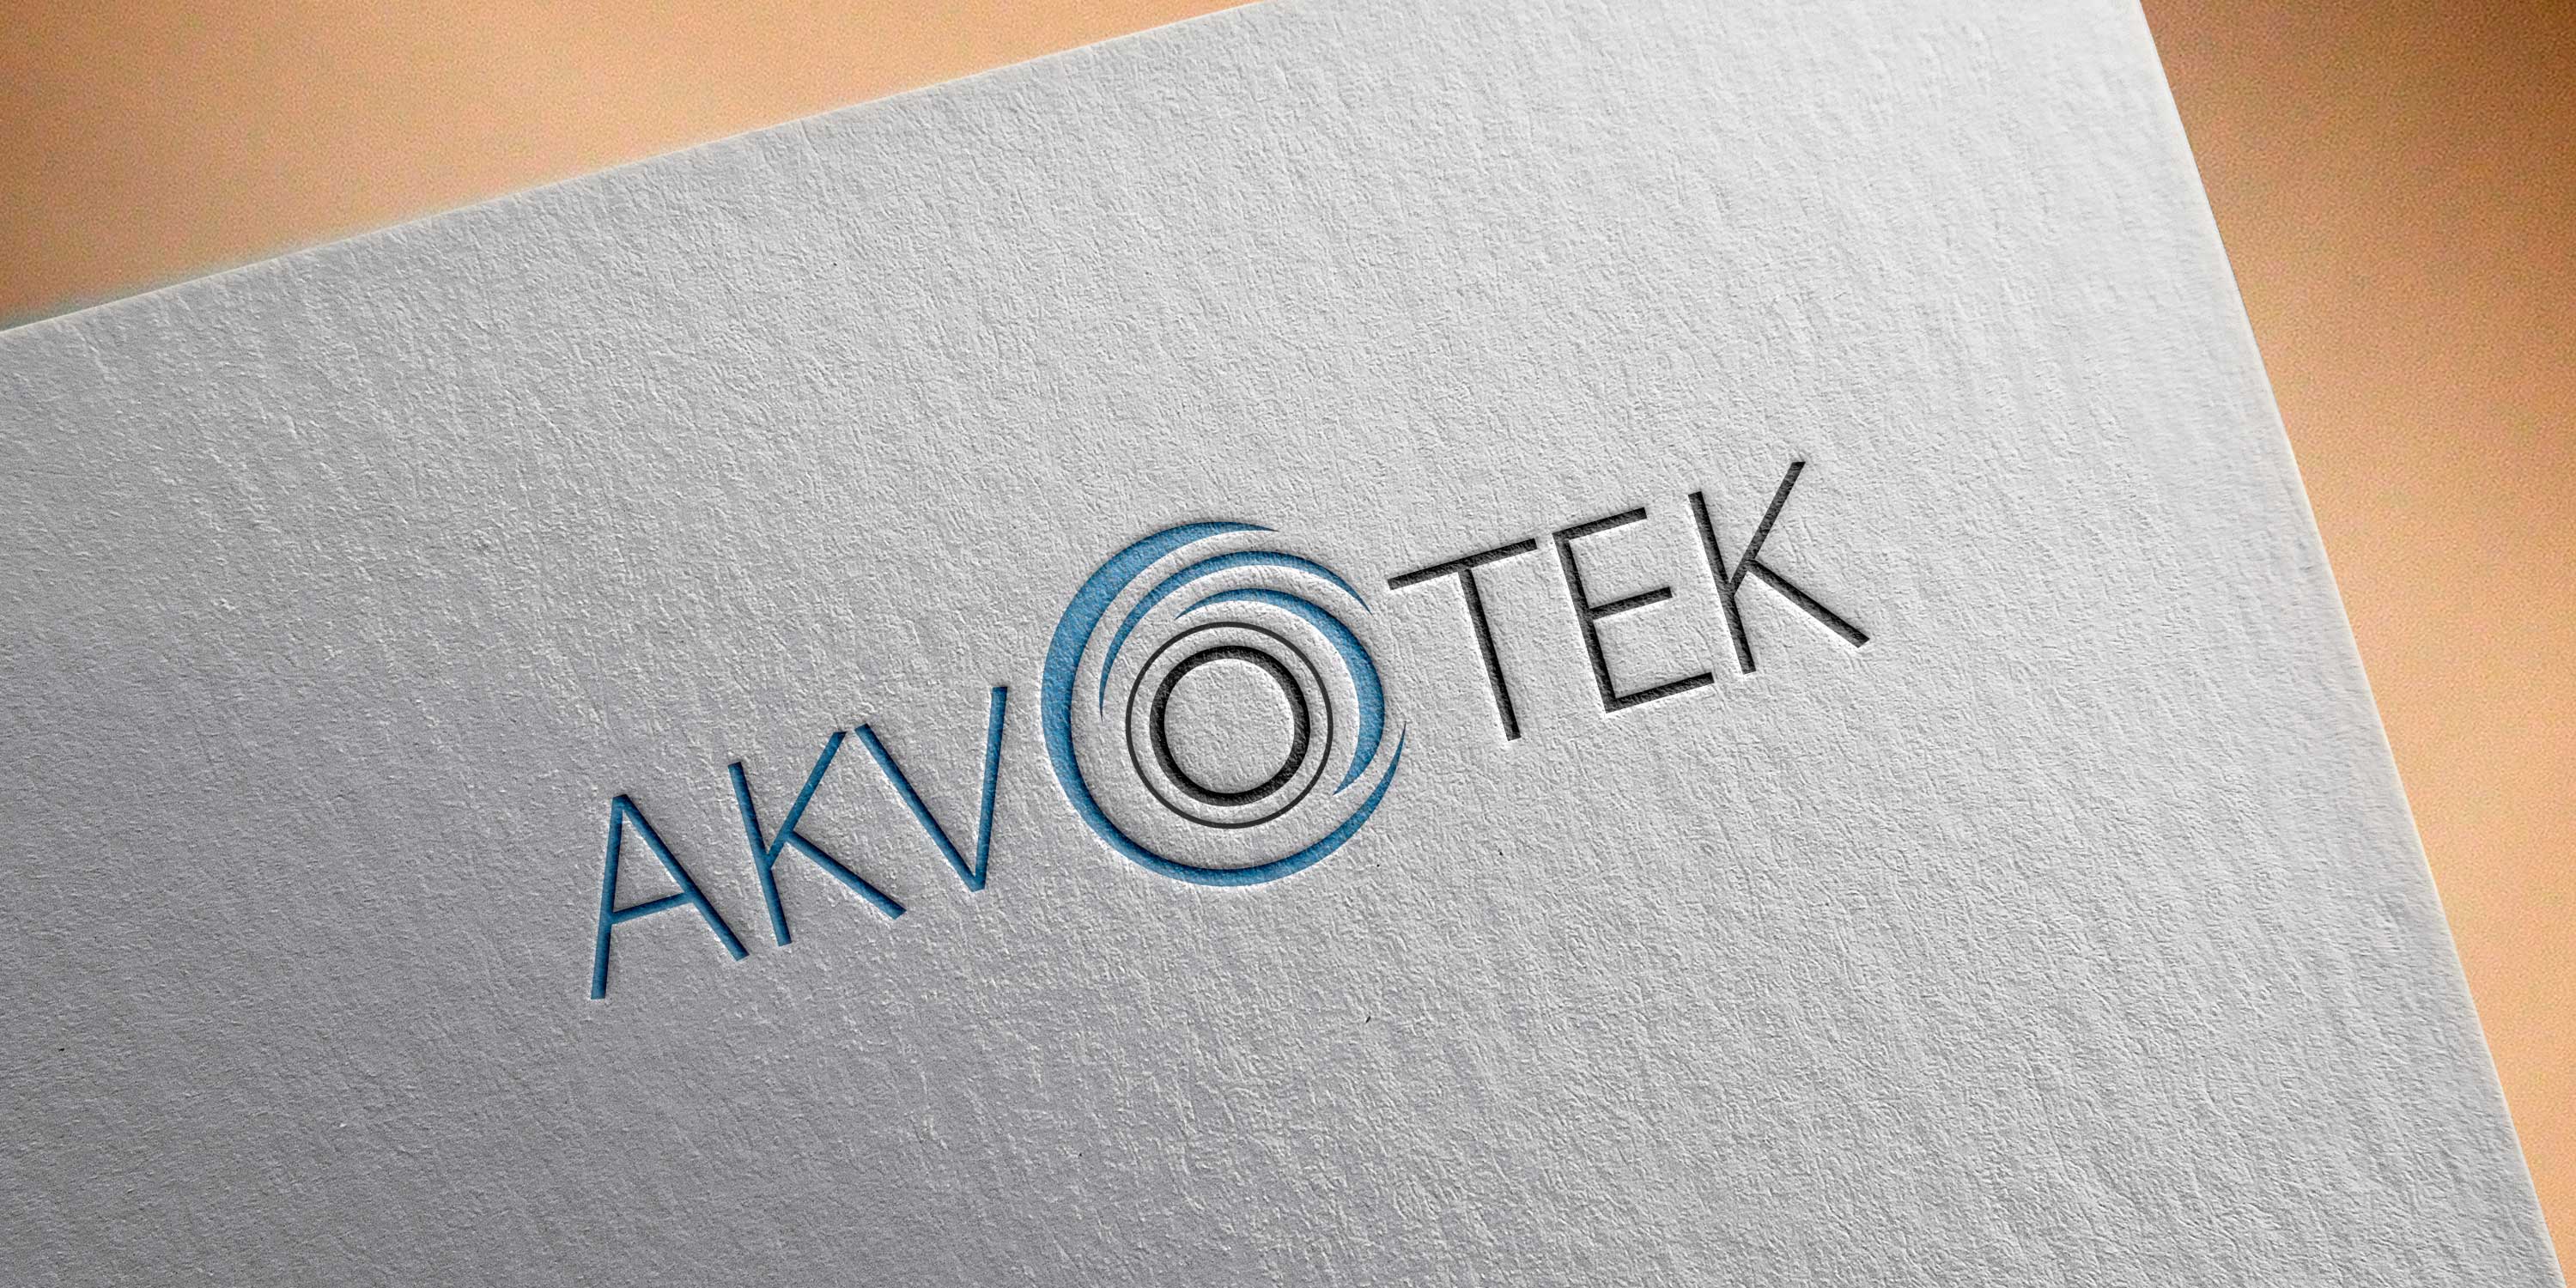 Logo Akvotek